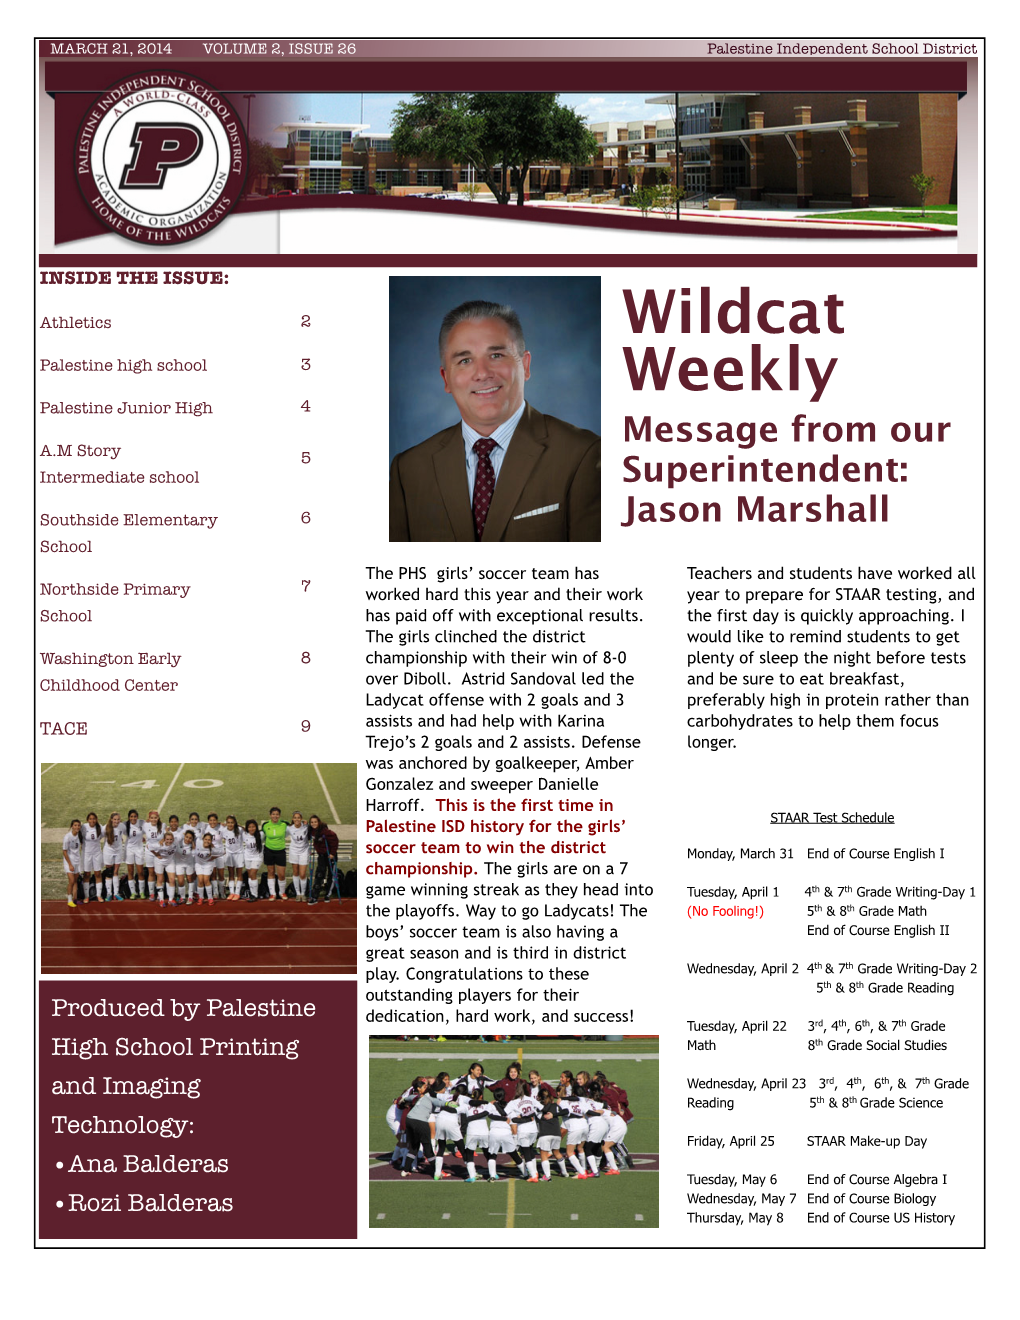 Wildcat Weekly 26